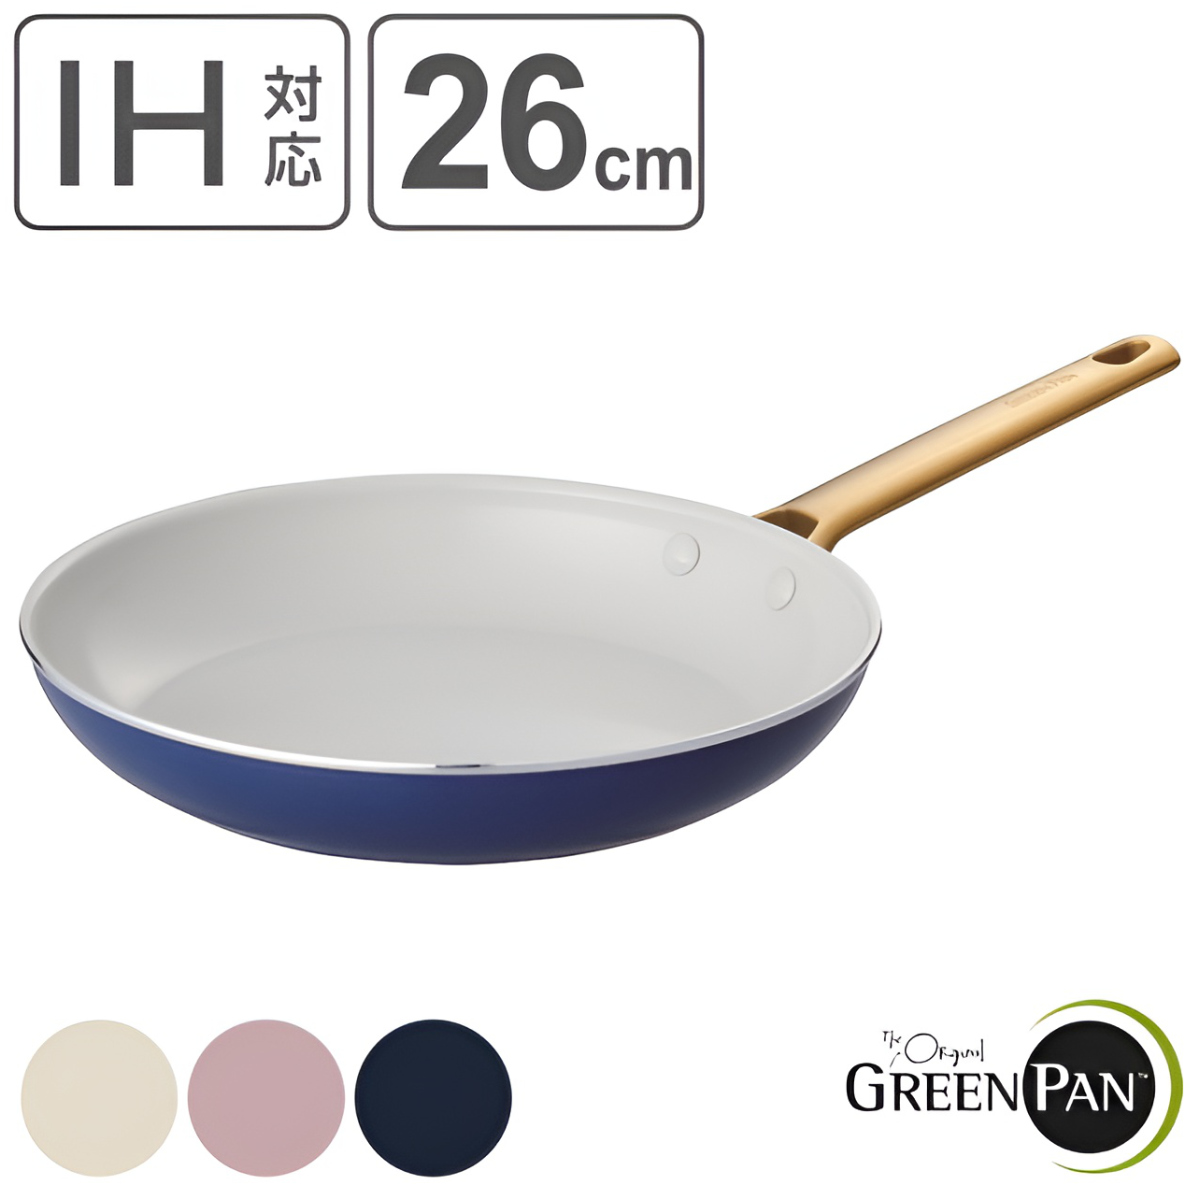 GREEN PAN フライパン 26cm IH対応 パドヴァフライパン